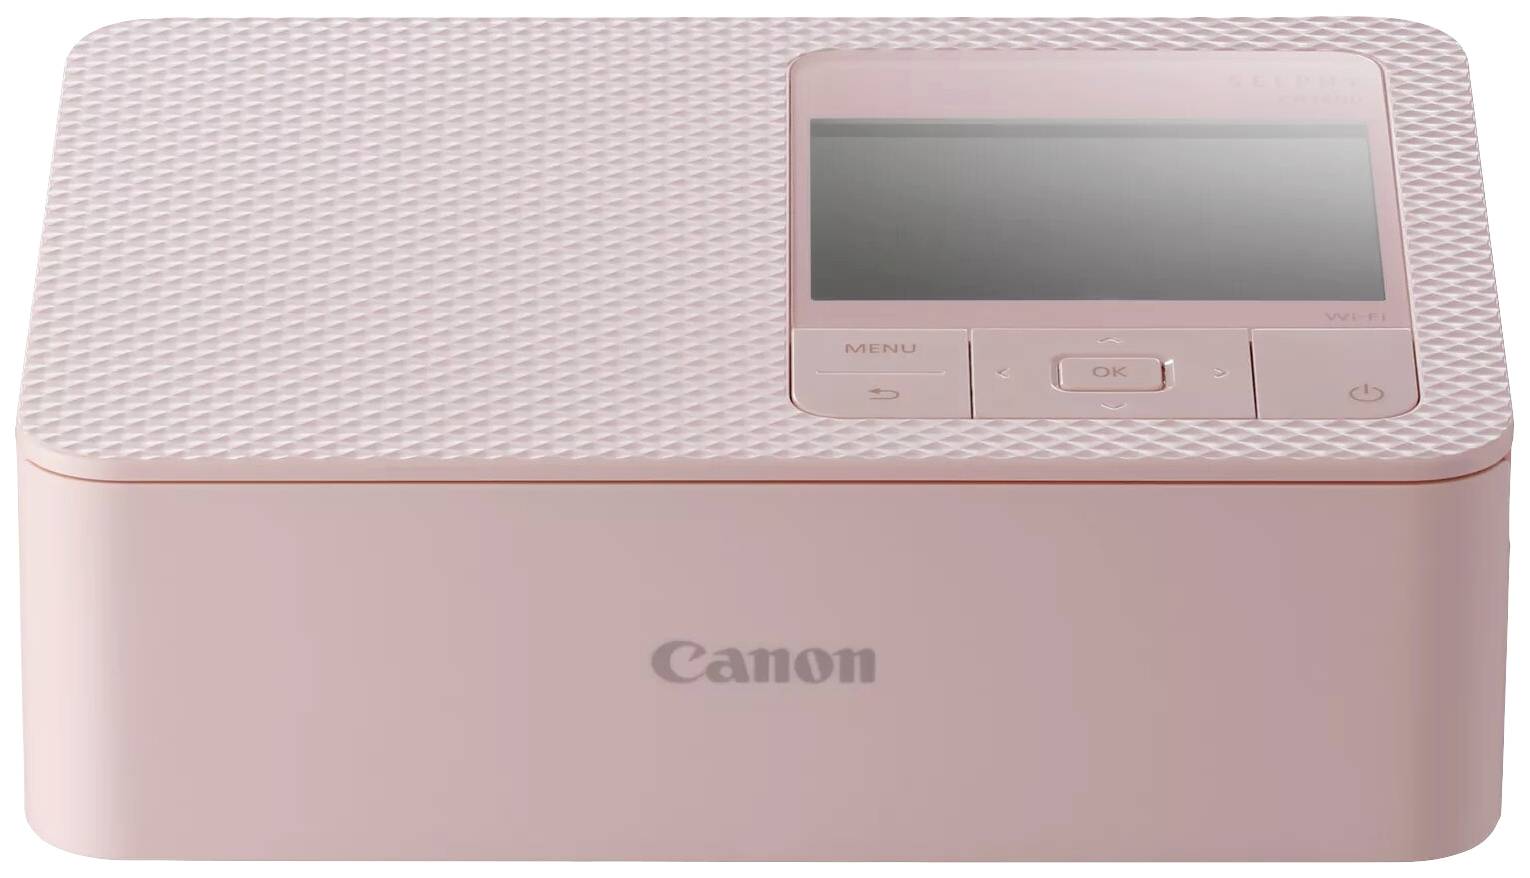 CANON Selphy Cp1500 Photo Printer